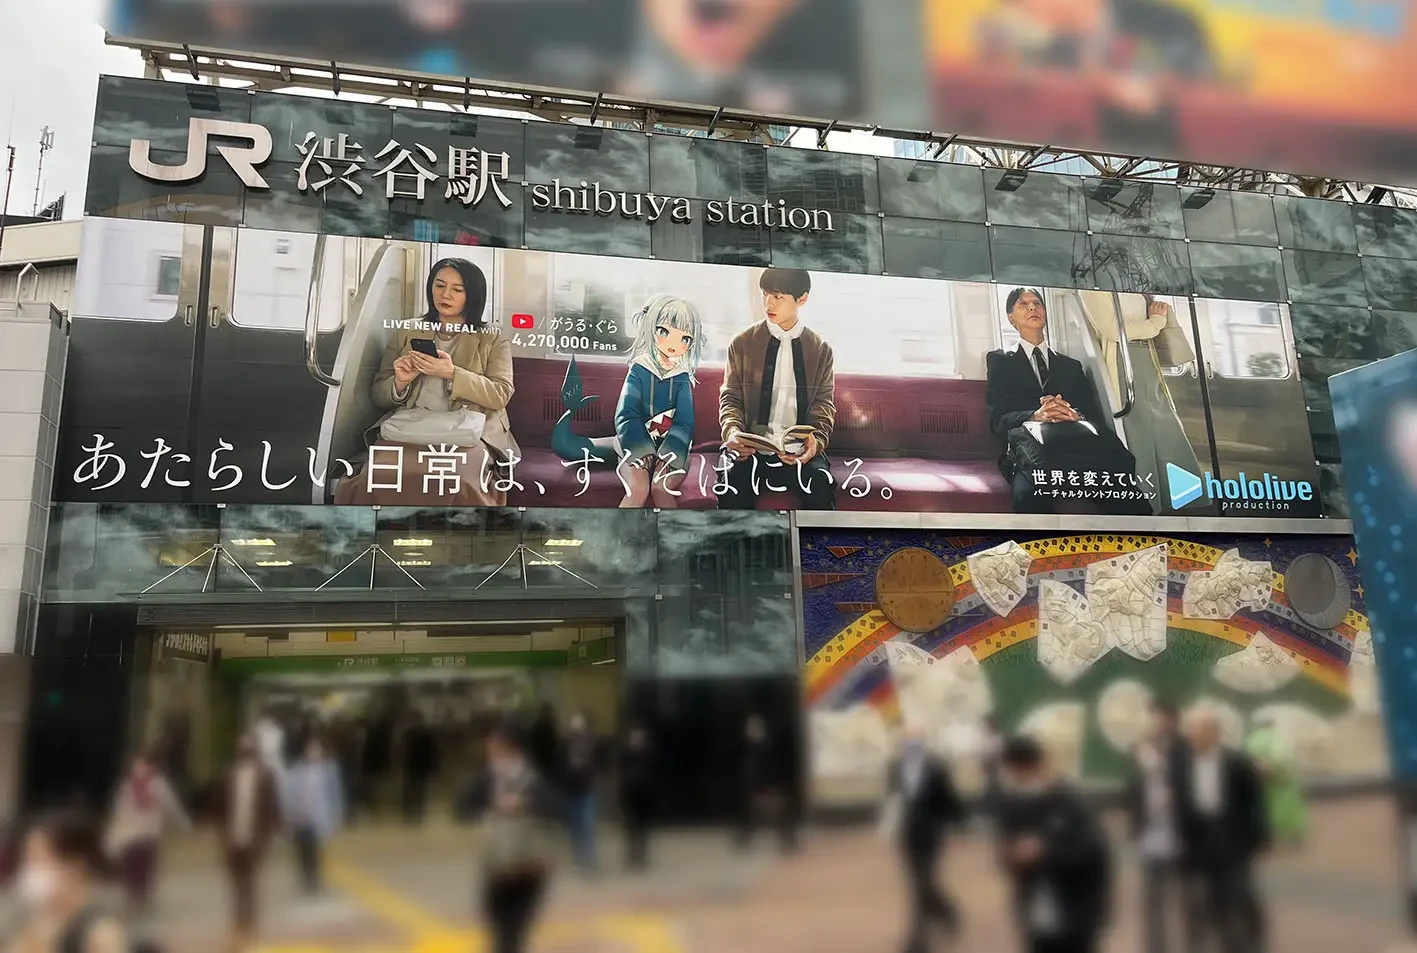 ホロライブの提唱する「あたらしい日常」 渋谷や新宿にVTuberとの生活描く広告